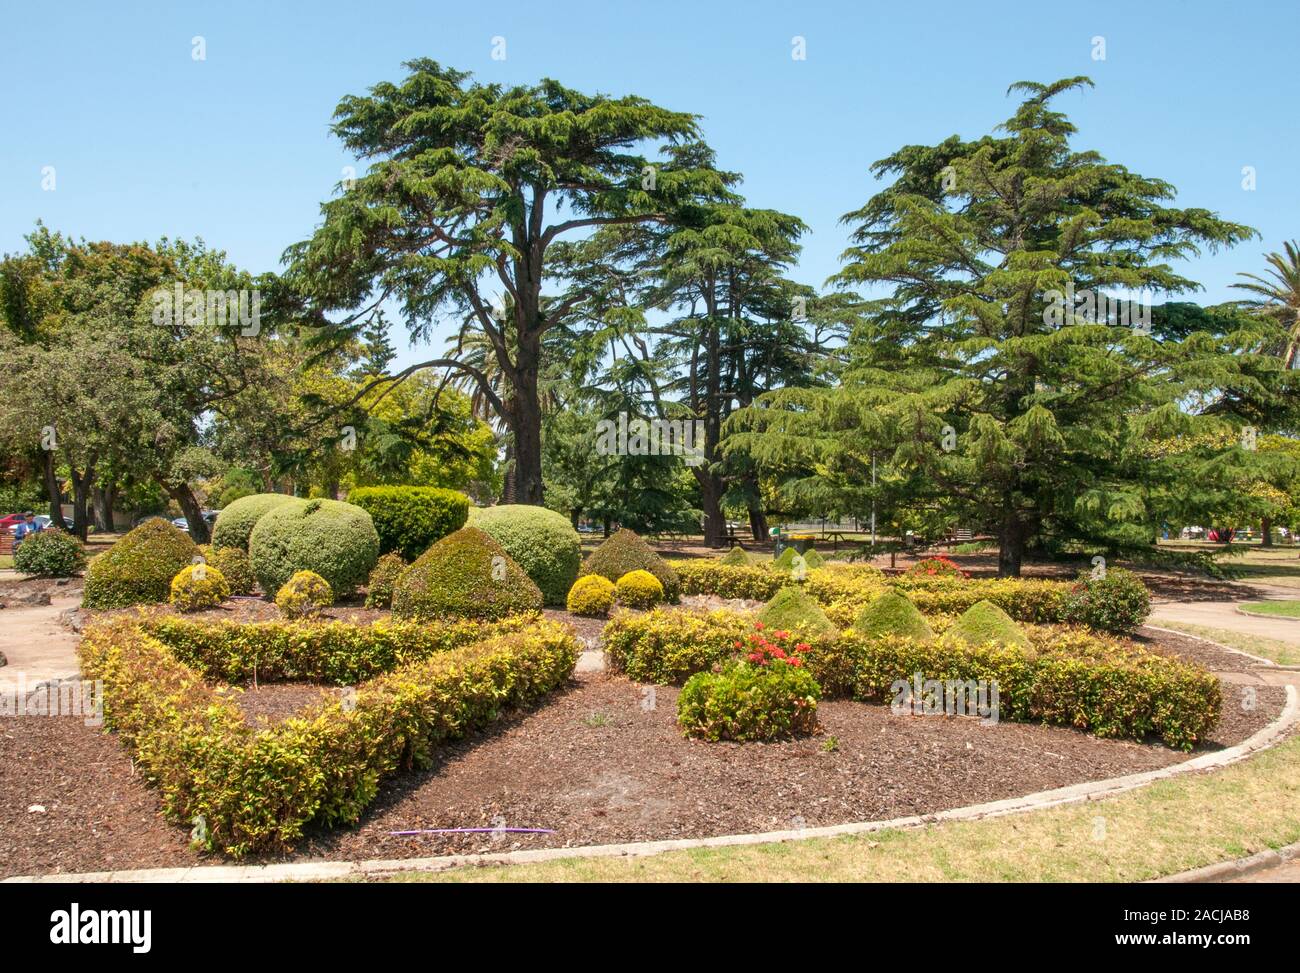 Les jardins Hopetoun d'Elsternwick, qui ont été établis en 1909, abritent plusieurs arbres importants, dont le chêne, le Laurier, la prune sauvage, le magnolia et le châtaignier. Banque D'Images